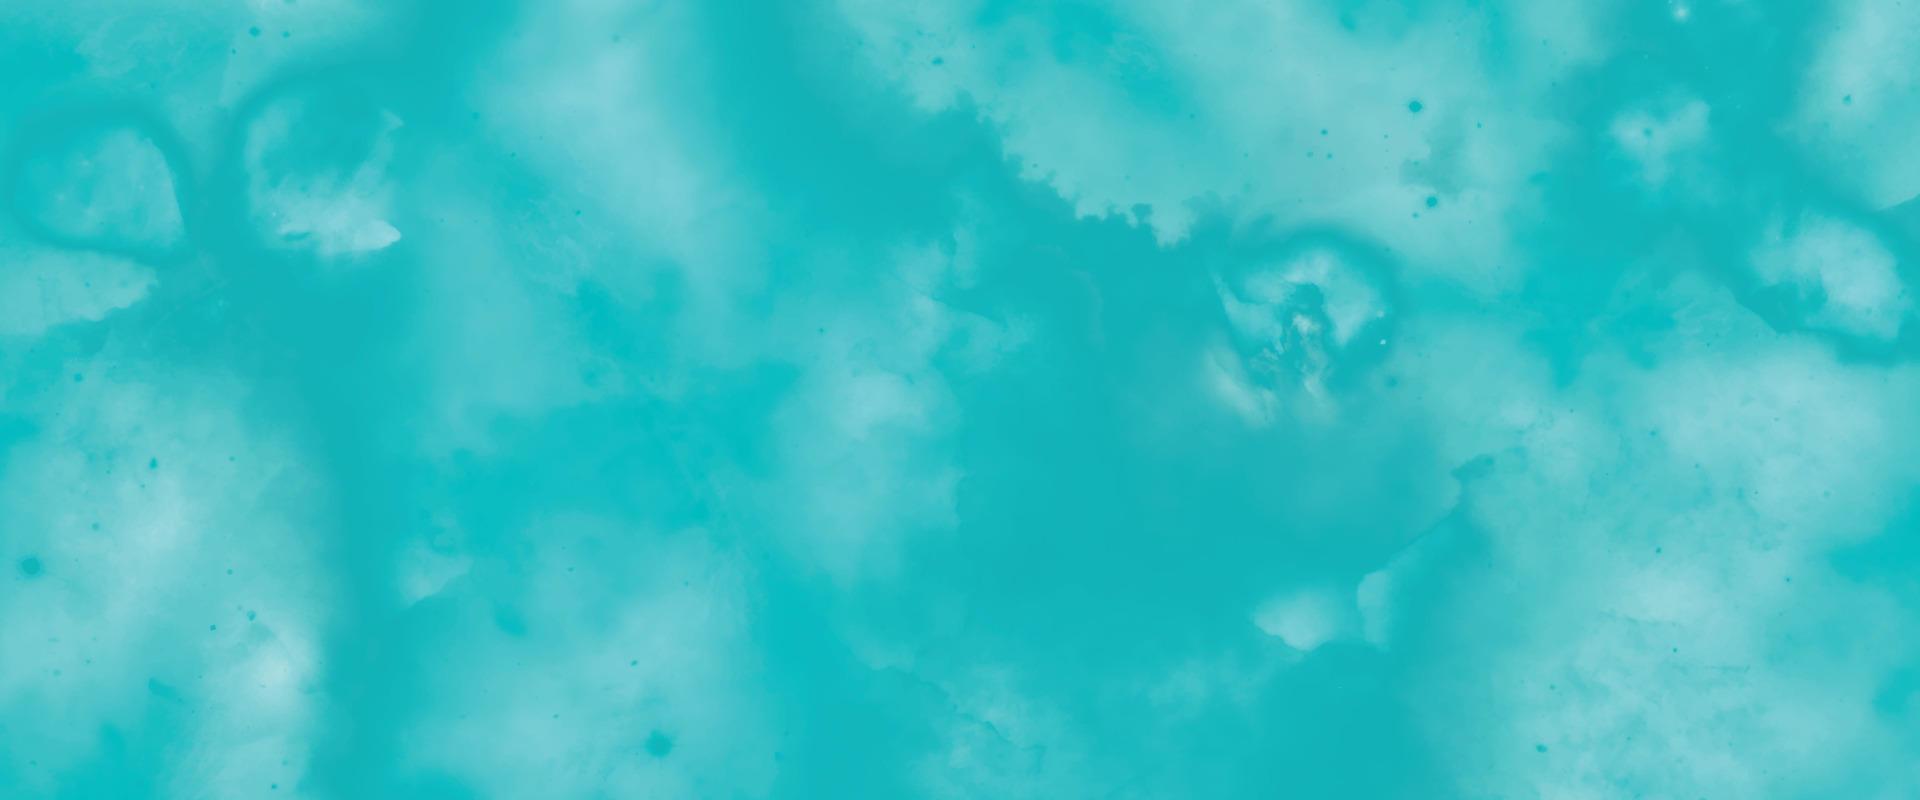 abstrakter bunter hintergrund. weiches Farbhintergrunddesign. schöner blauer Aquarellschmutz. Aquarellpapier strukturierte Aquarellleinwand für modernes kreatives Design. Hintergrund mit Strahlen. vektor